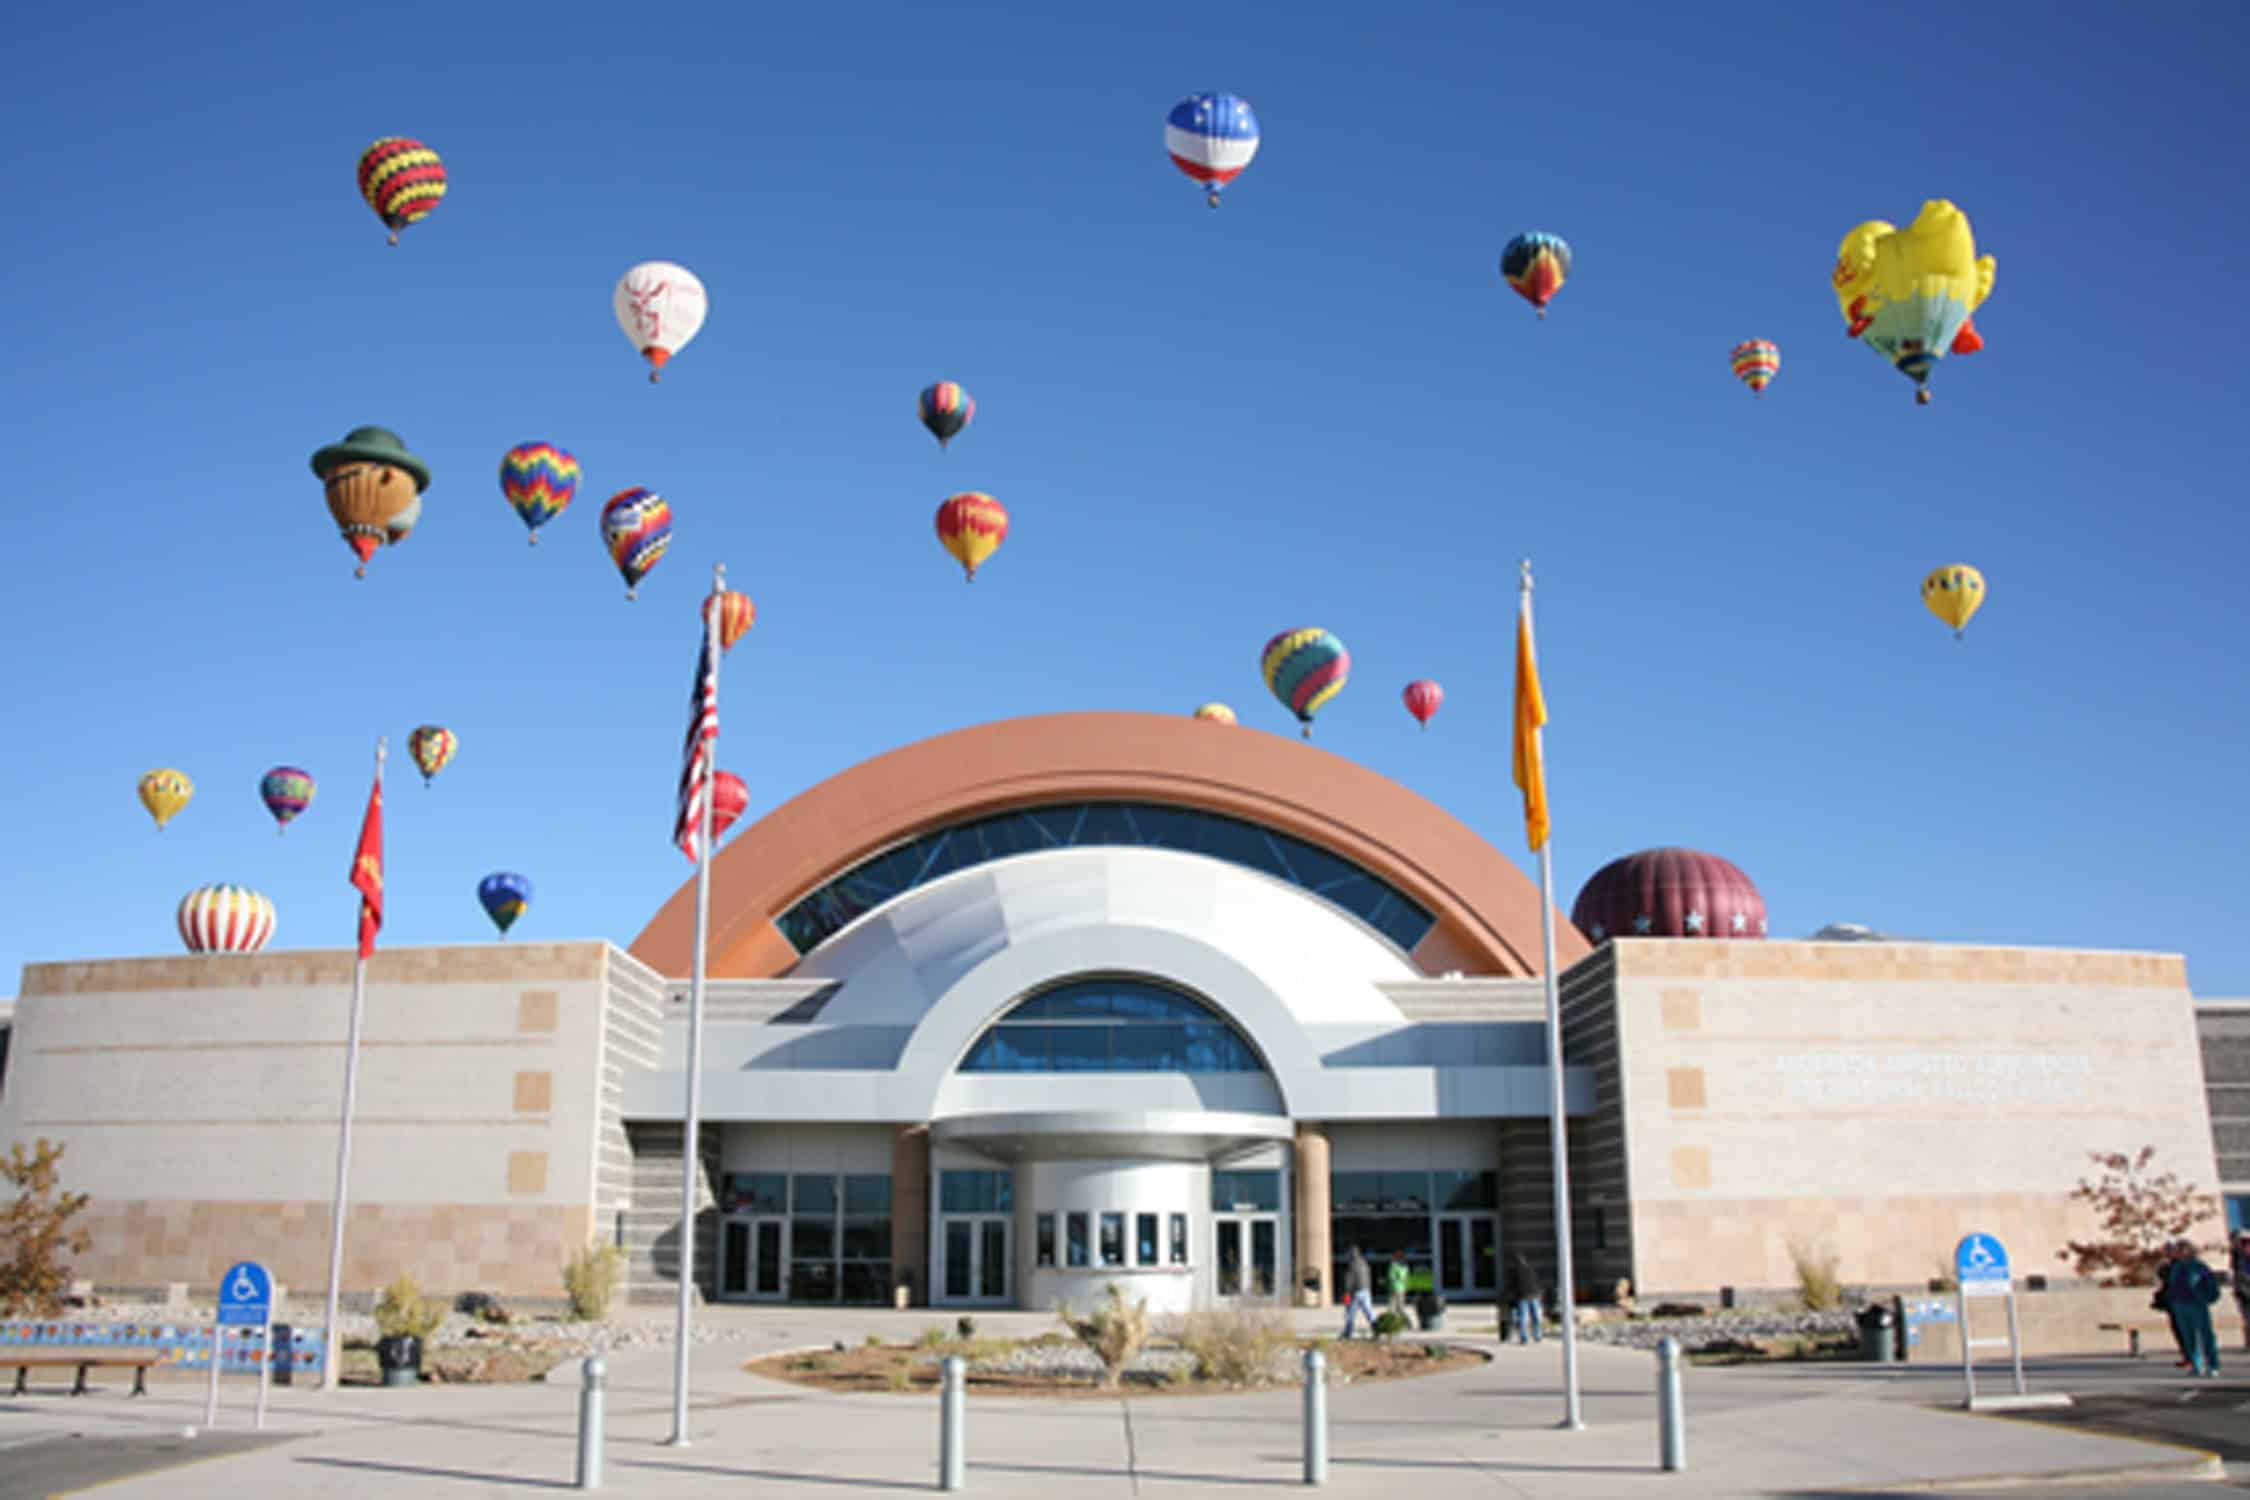 Balloon Fiesta Park International Balloon Museum